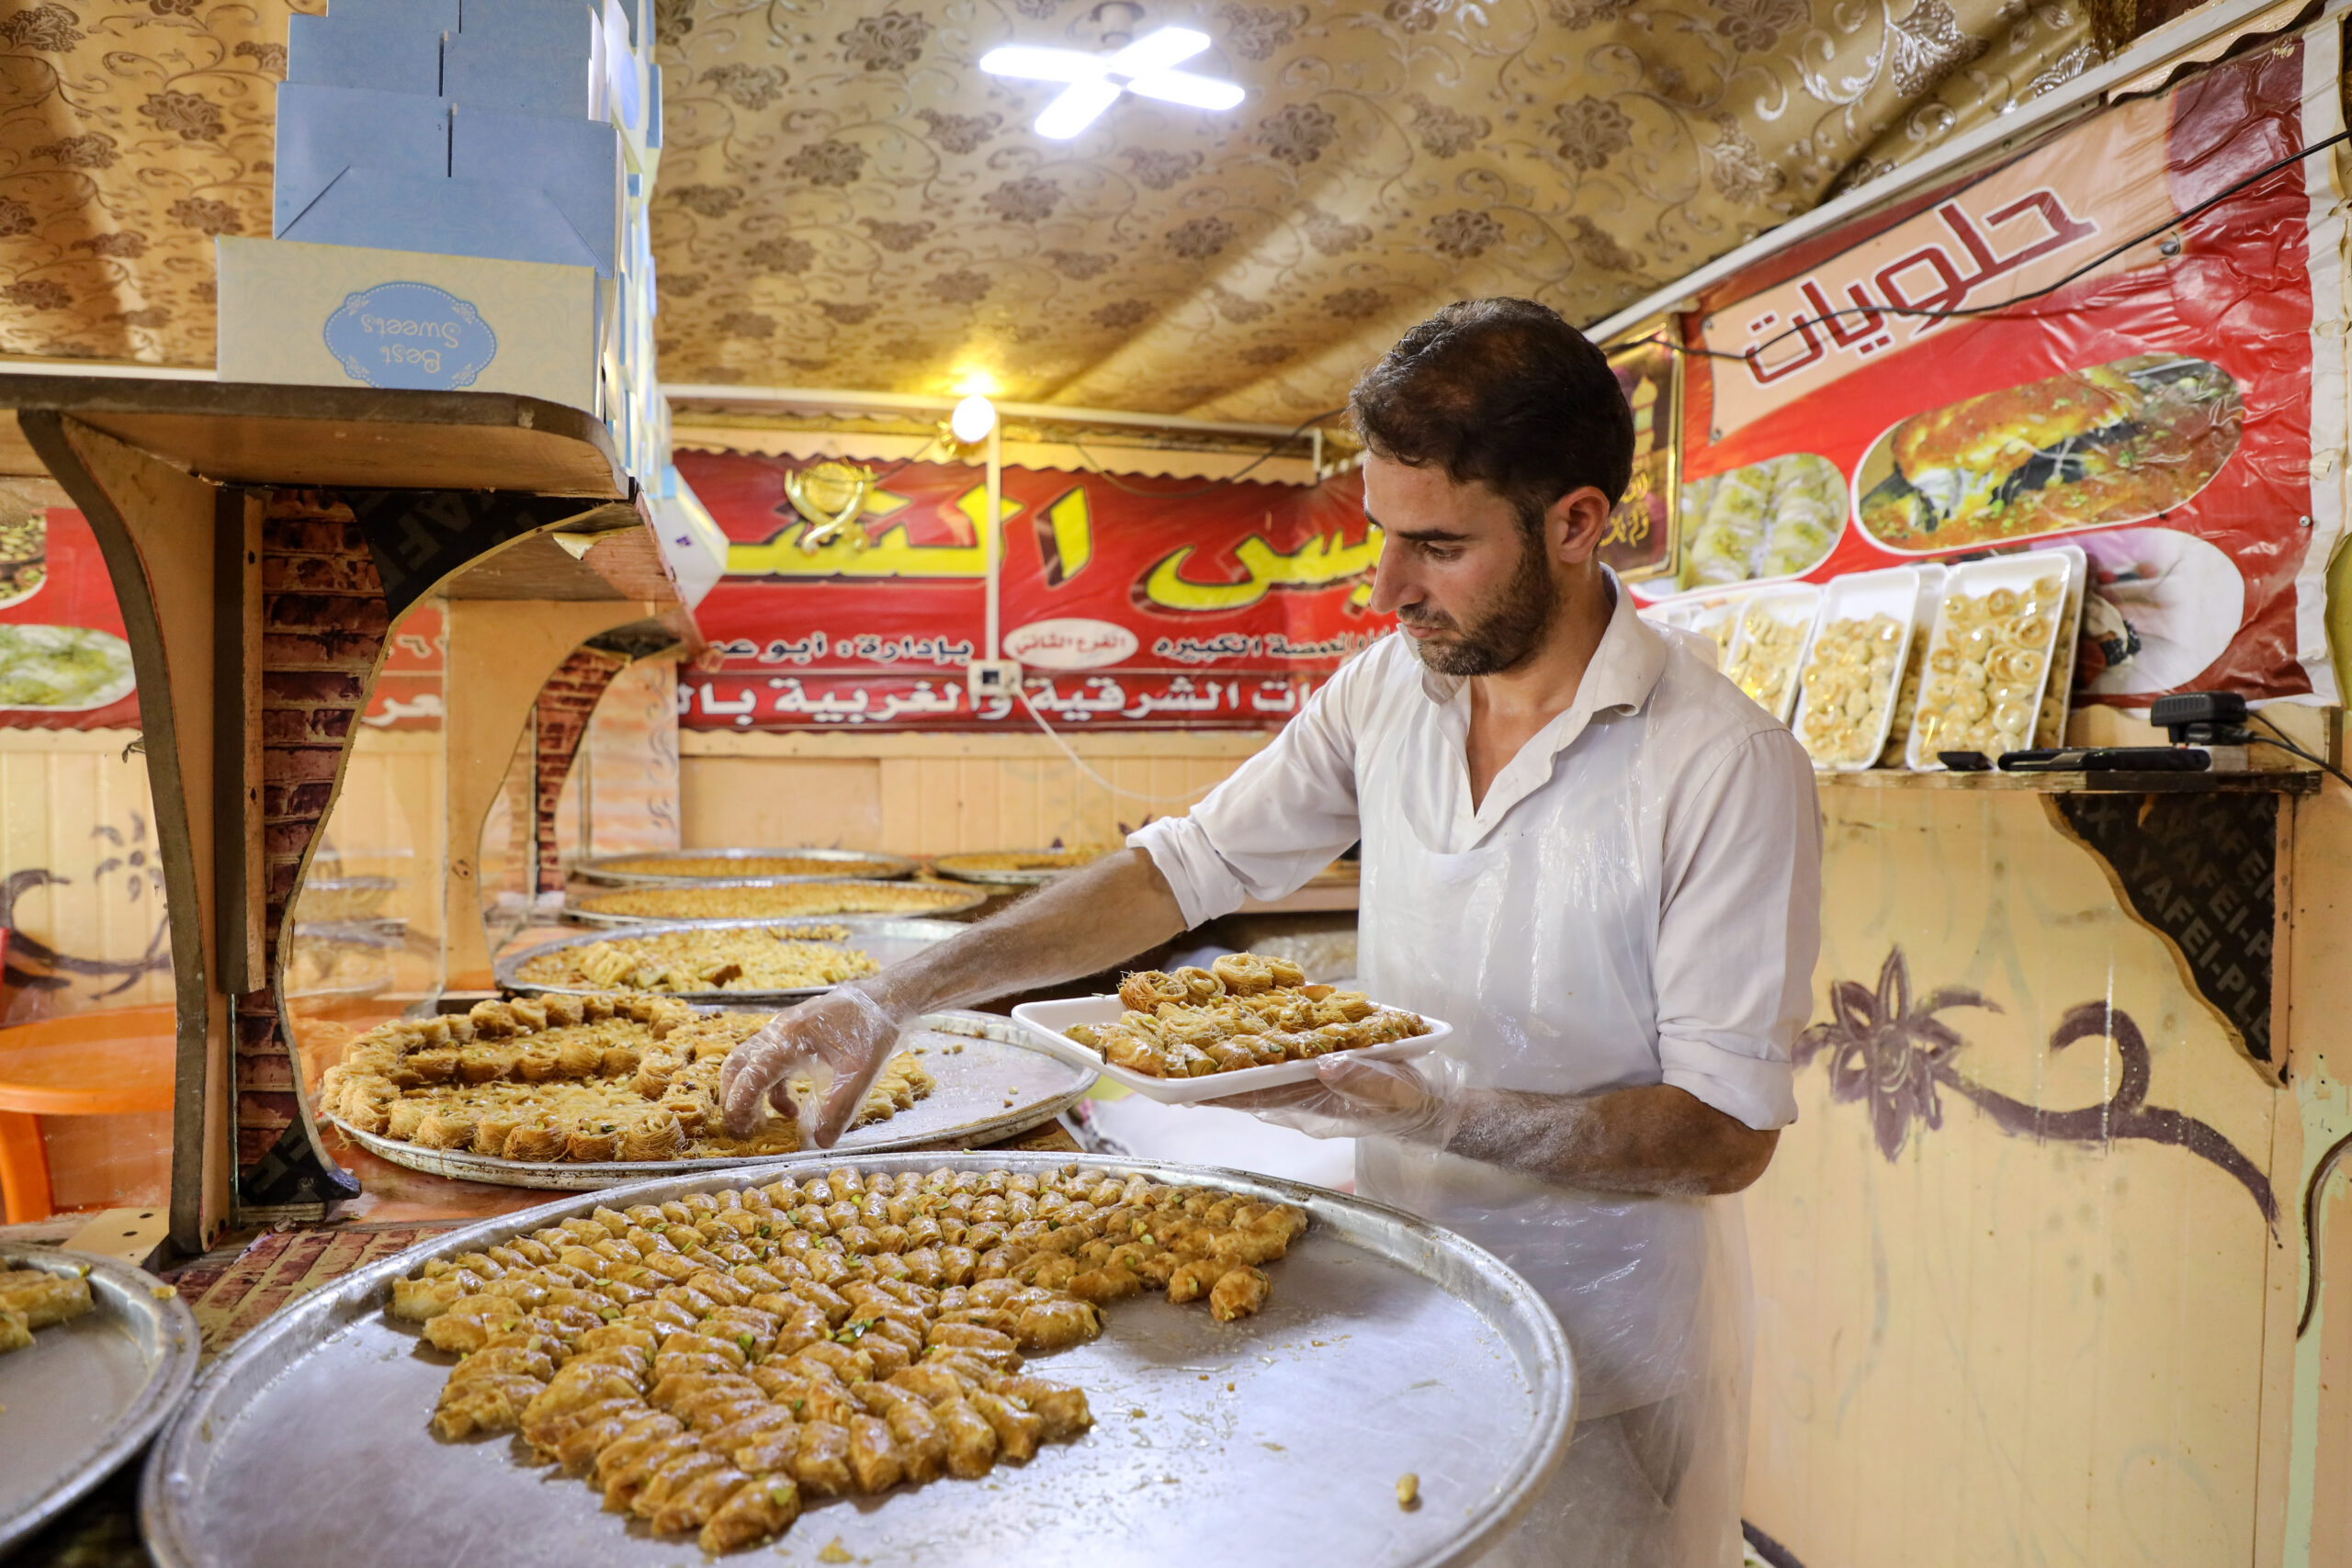 Odai, 28 jaar, die sinds 2012 in het kamp woont, verkoopt traditionele Arabische gebakjes. © UNHCR/Yousef Alhariri